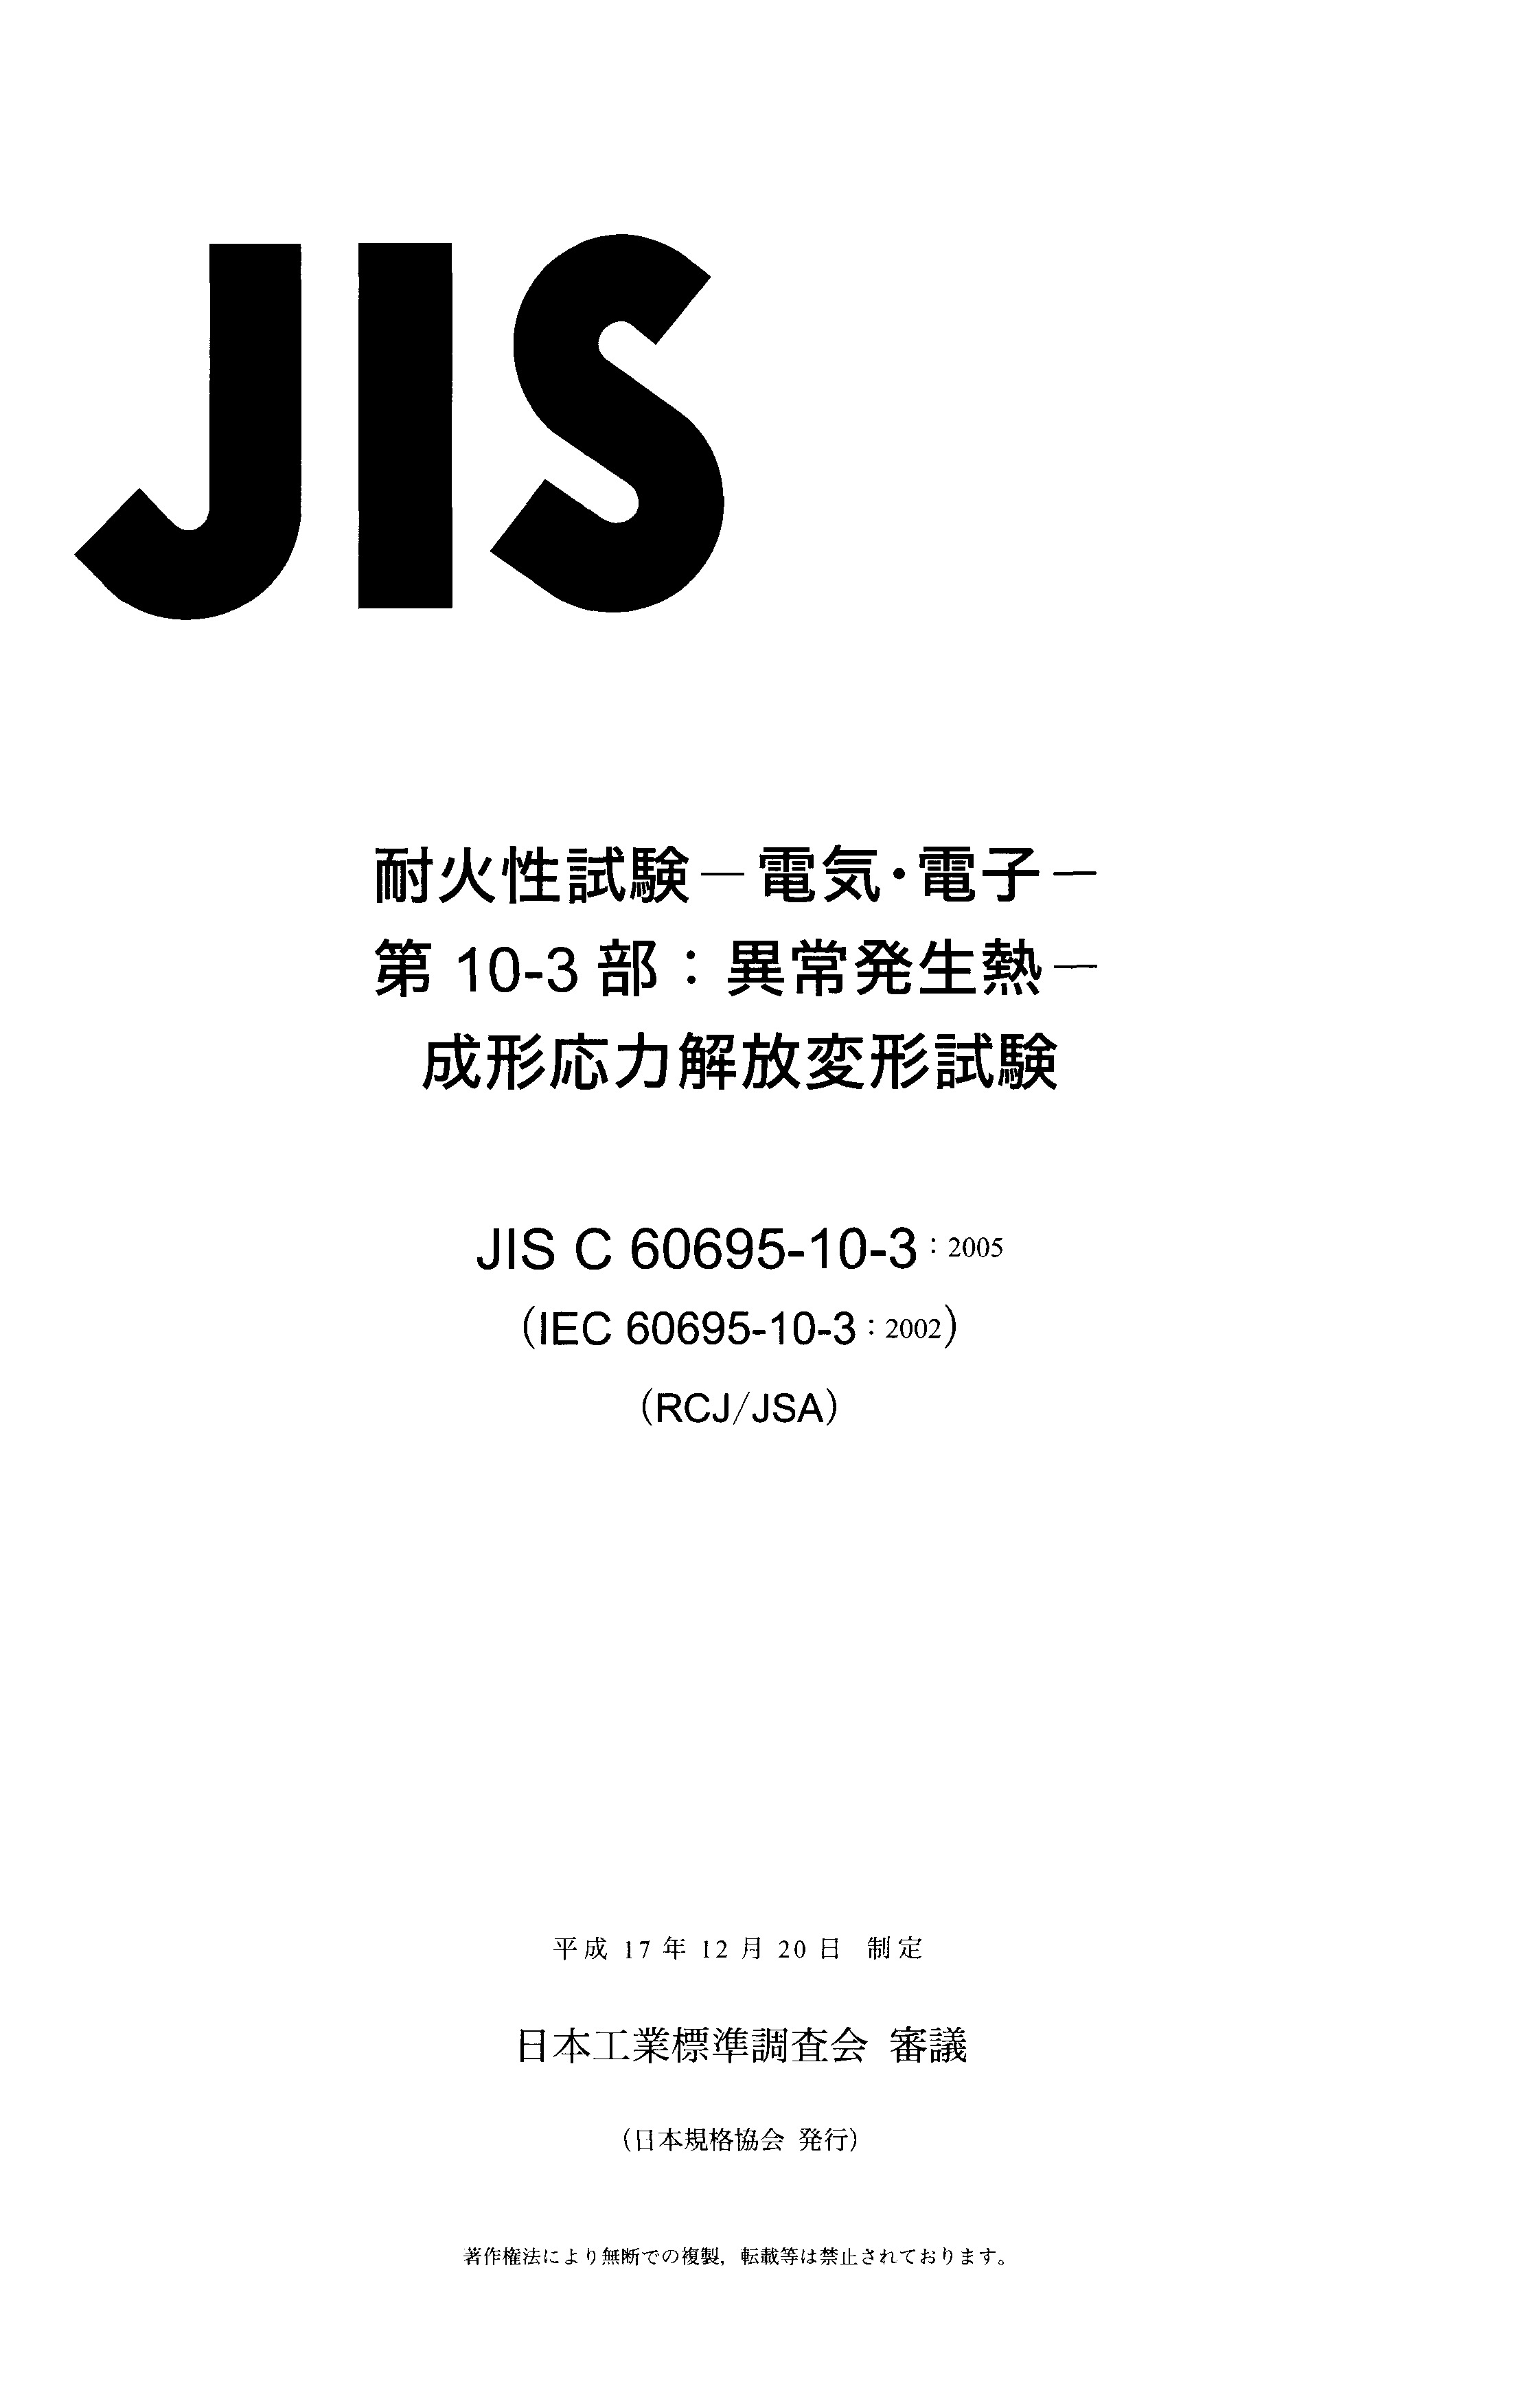 JIS C 60695-10-3:2005封面图